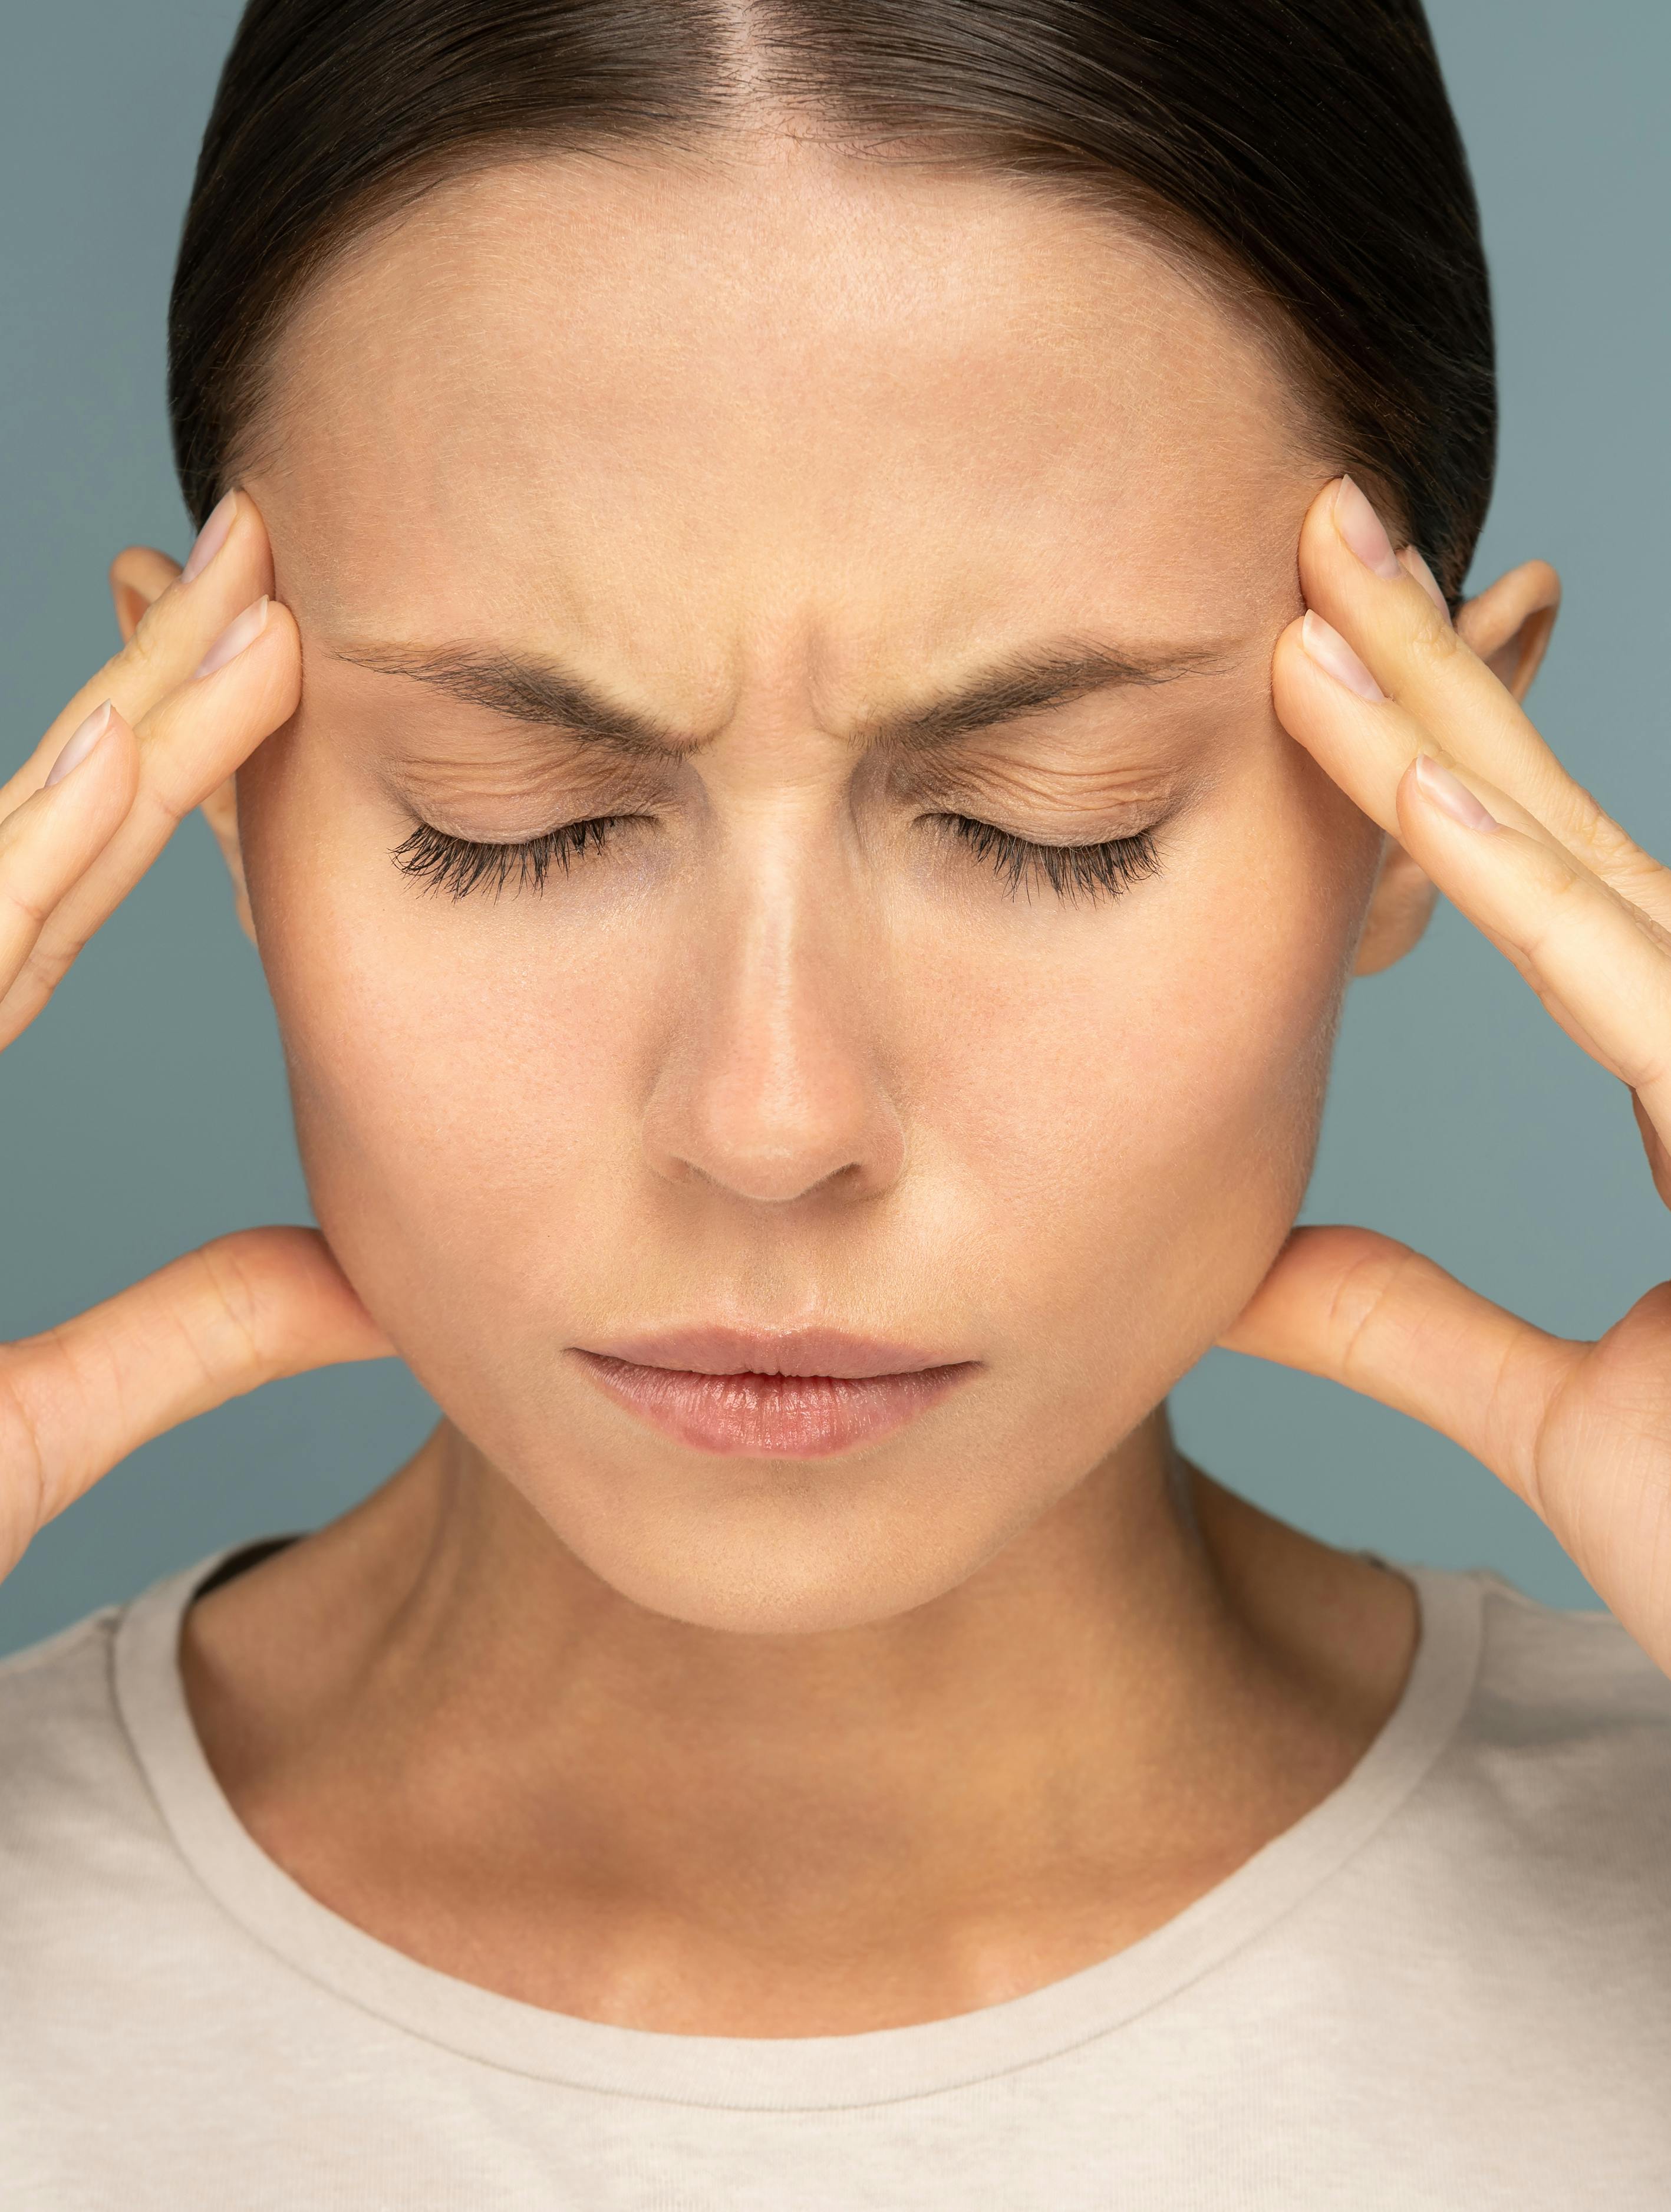 råd mod hovedpine